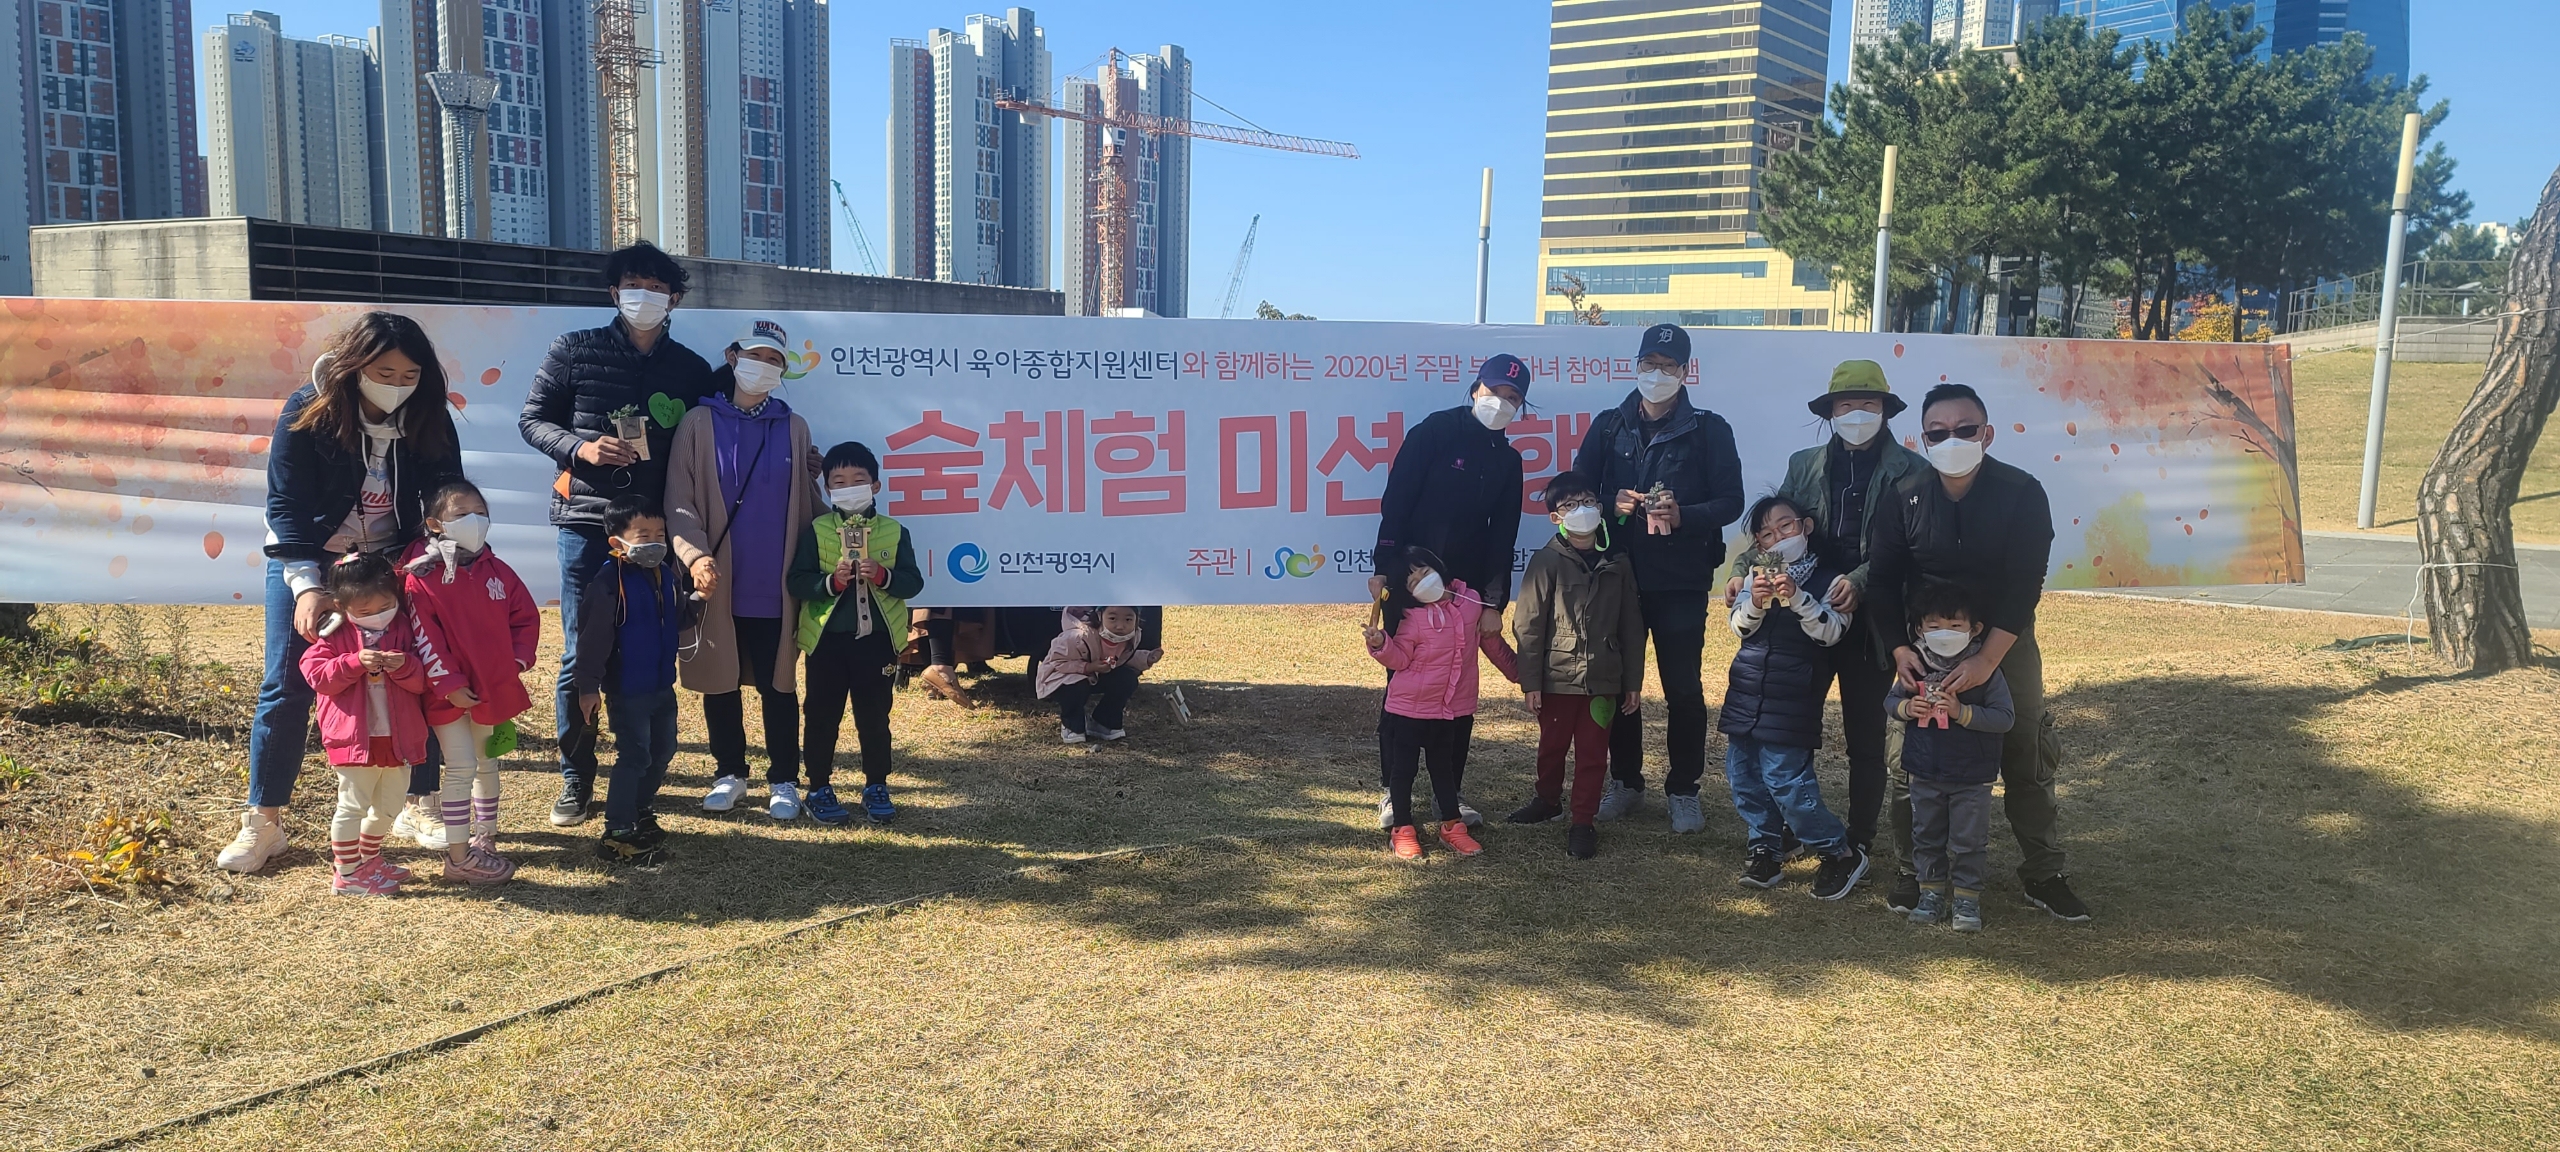 인천시, 주말 부모 자녀 참여 프로그램 「숲 체험 미션여행」개최 관련 이미지